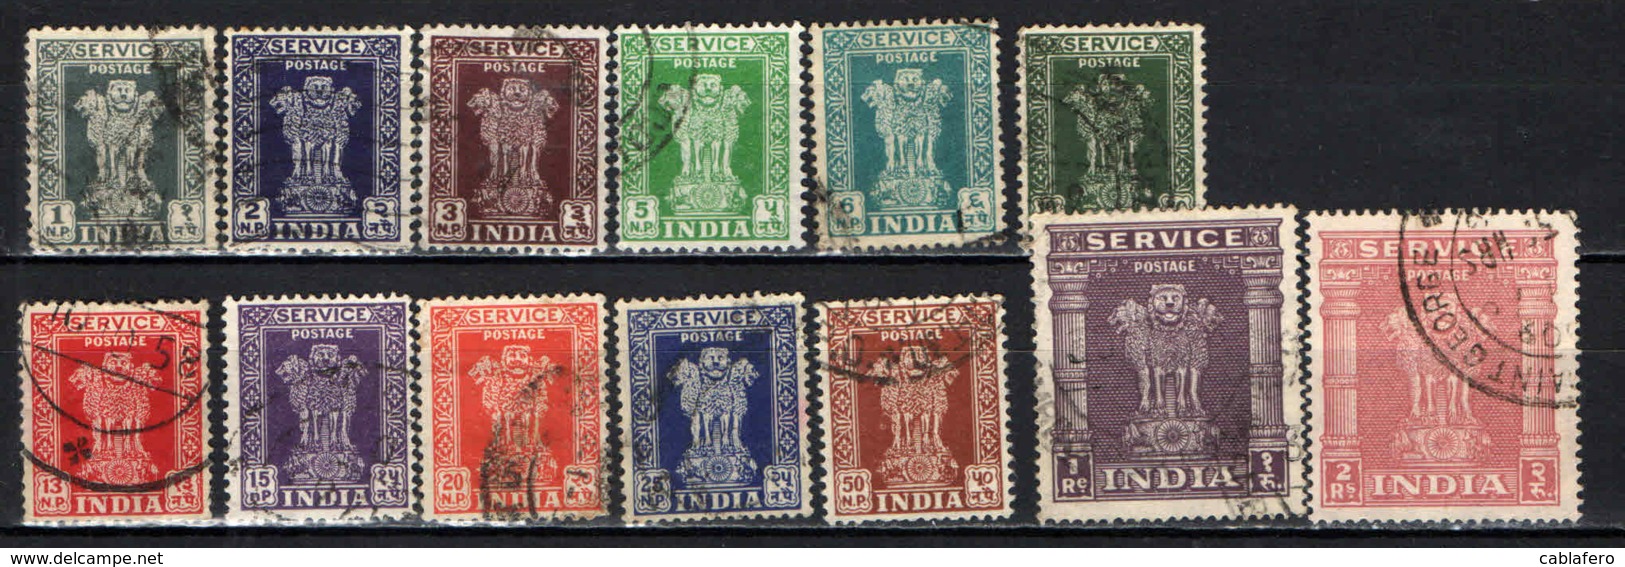 INDIA - 1958 - Capital Of Asoka Pillar - VALORI IN NP - FILIGRANA ASOKA PILLAR MULTIPLI - USATI - Francobolli Di Servizio